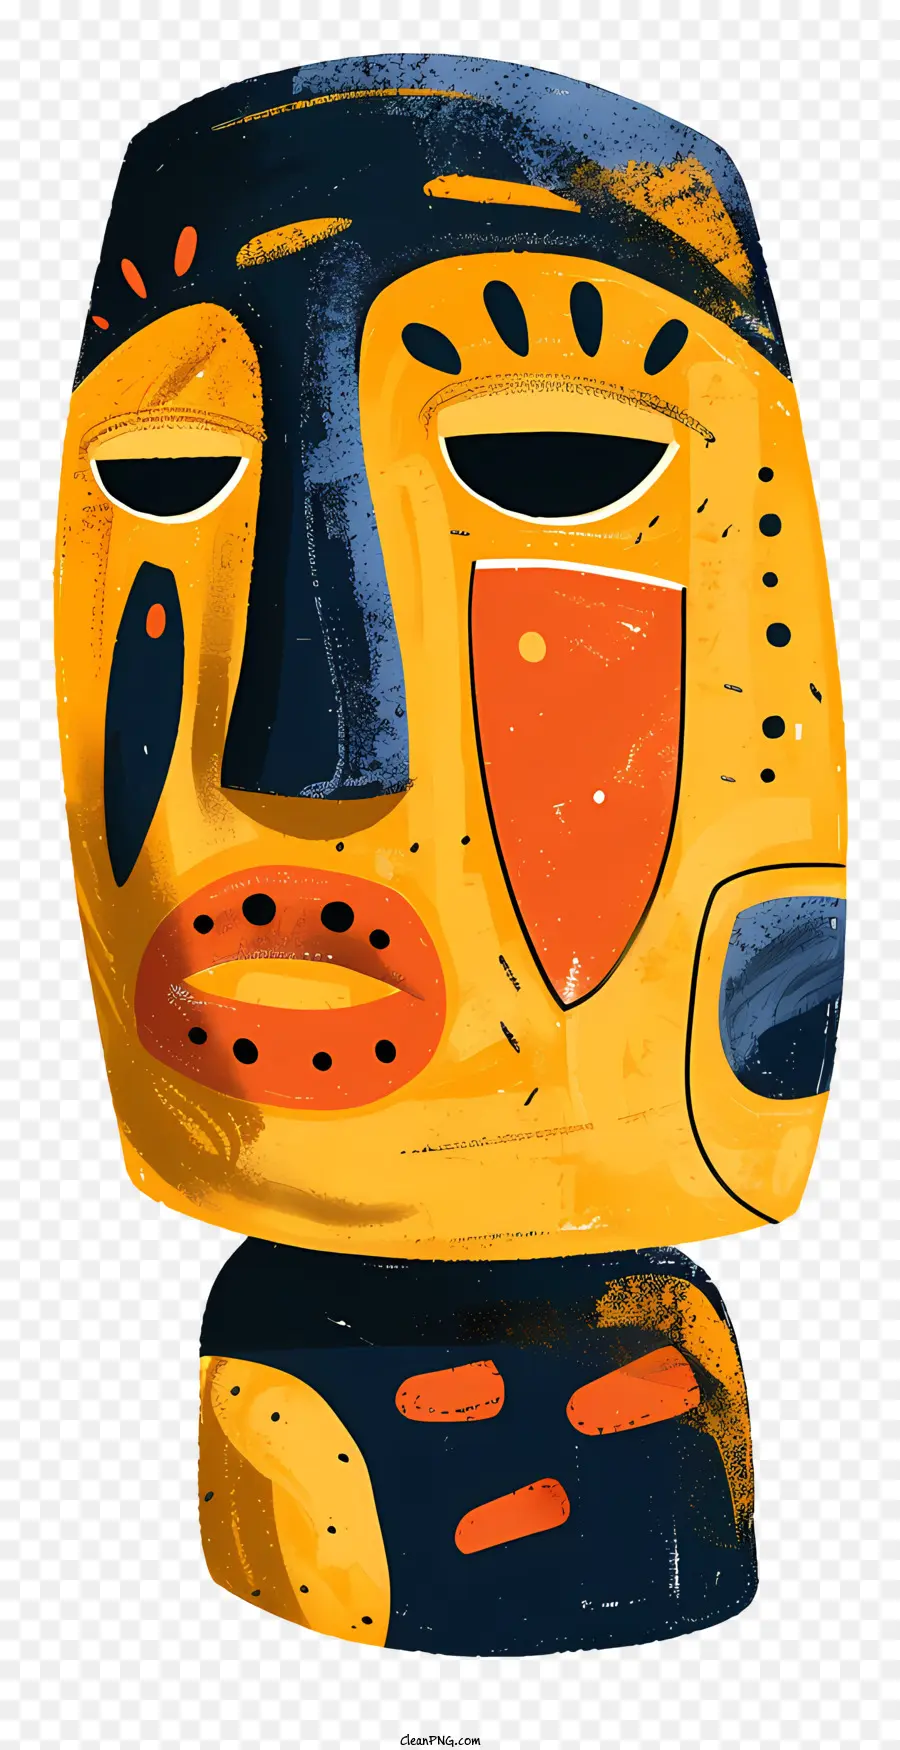 Alte Symbol Maske Illustration lächelnde Gesichtsmaske Buntes Maske abstrakte Gesichtskunst - Farbenfrohe abstrakte Maske mit lächelnder Ausdruckskunst